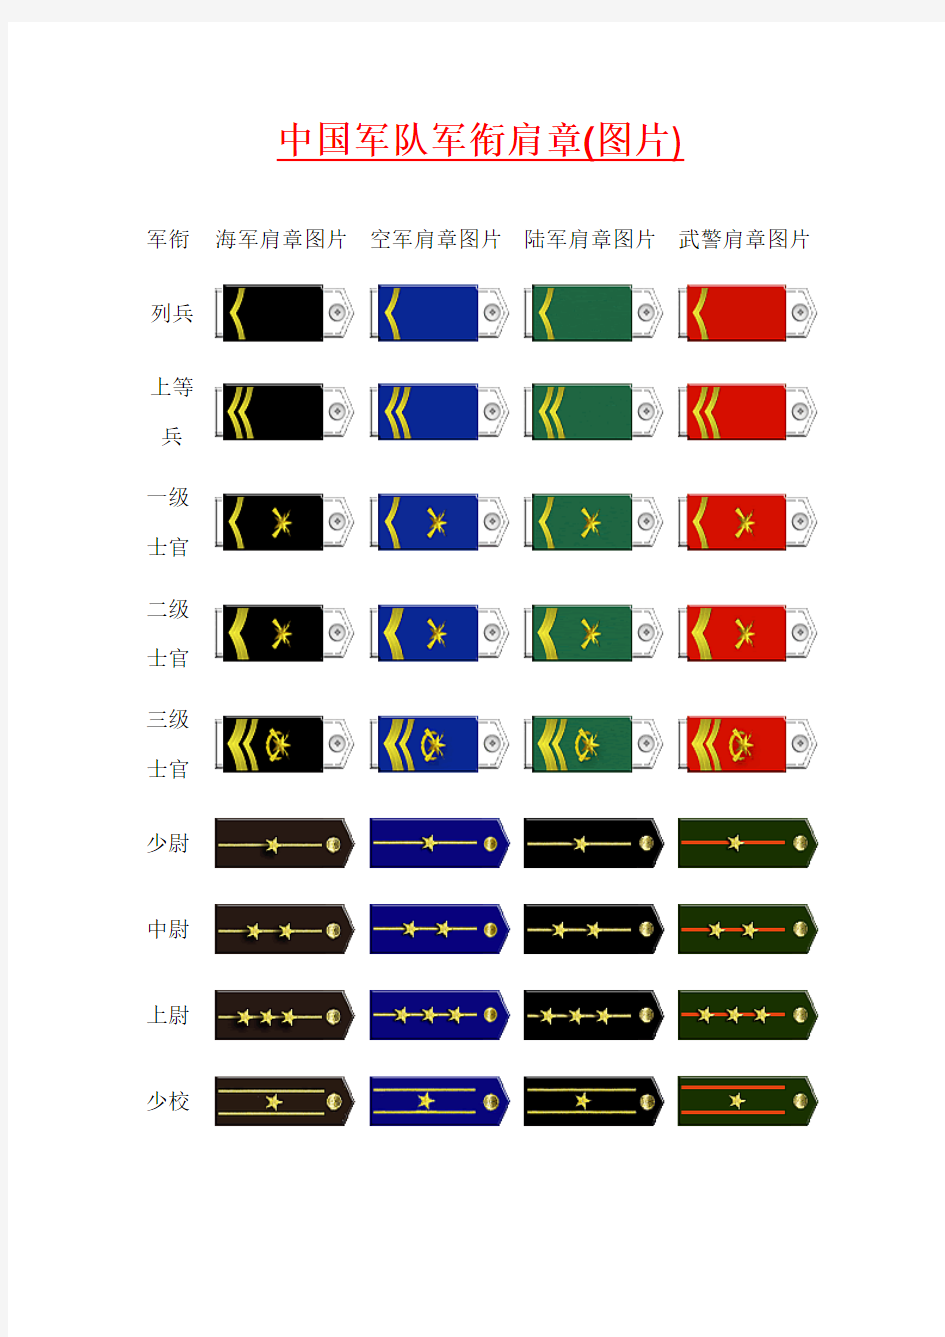 中国军队军衔肩章(图片)